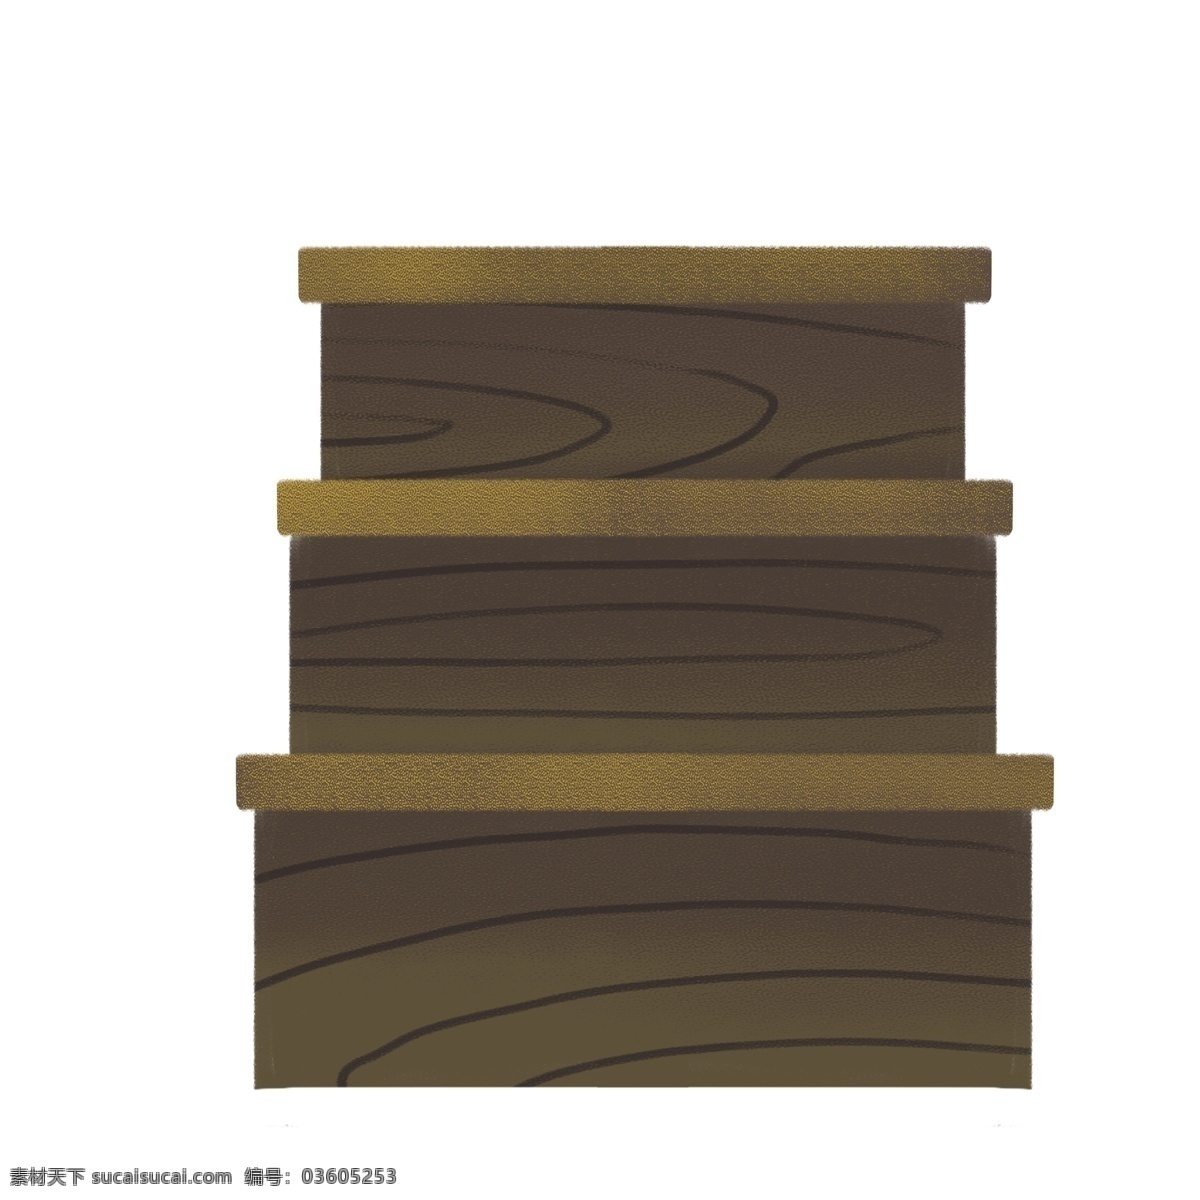 木质 楼梯 装饰 元素 木质楼梯 楼梯元素 楼梯素材 楼梯装饰 卡通楼梯 木纹 木纹元素 木纹素材 木纹装饰 木桌 木桌元素 木桌素材 木桌装饰 元素设计 动漫动画 风景漫画